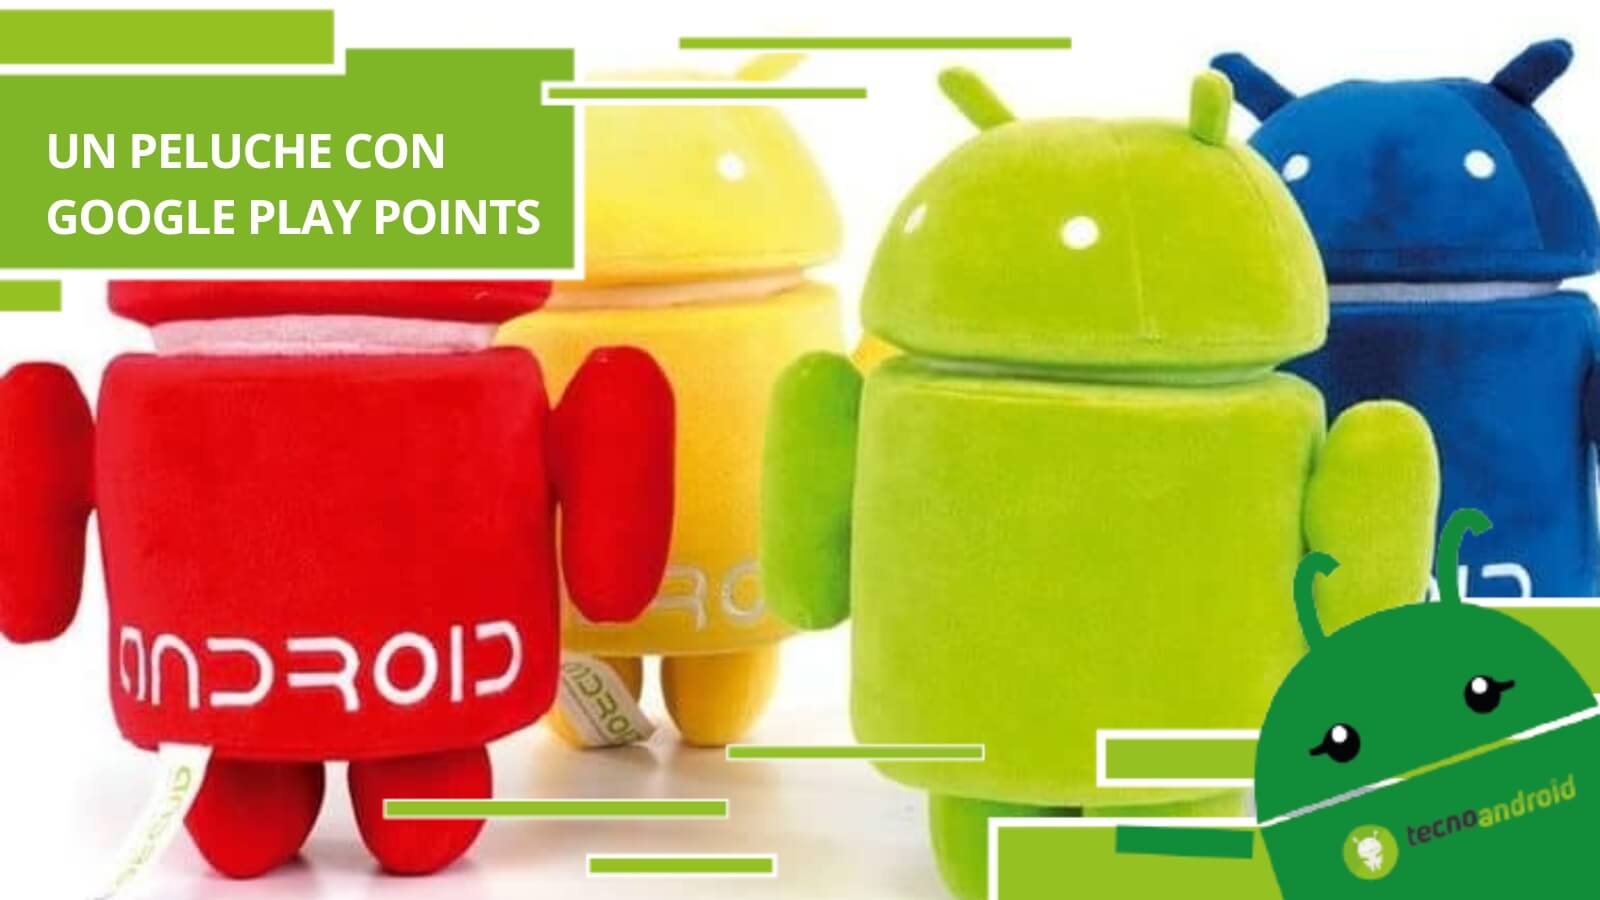 Google Play Points, con i punti è possibile ottenere un peluche Android